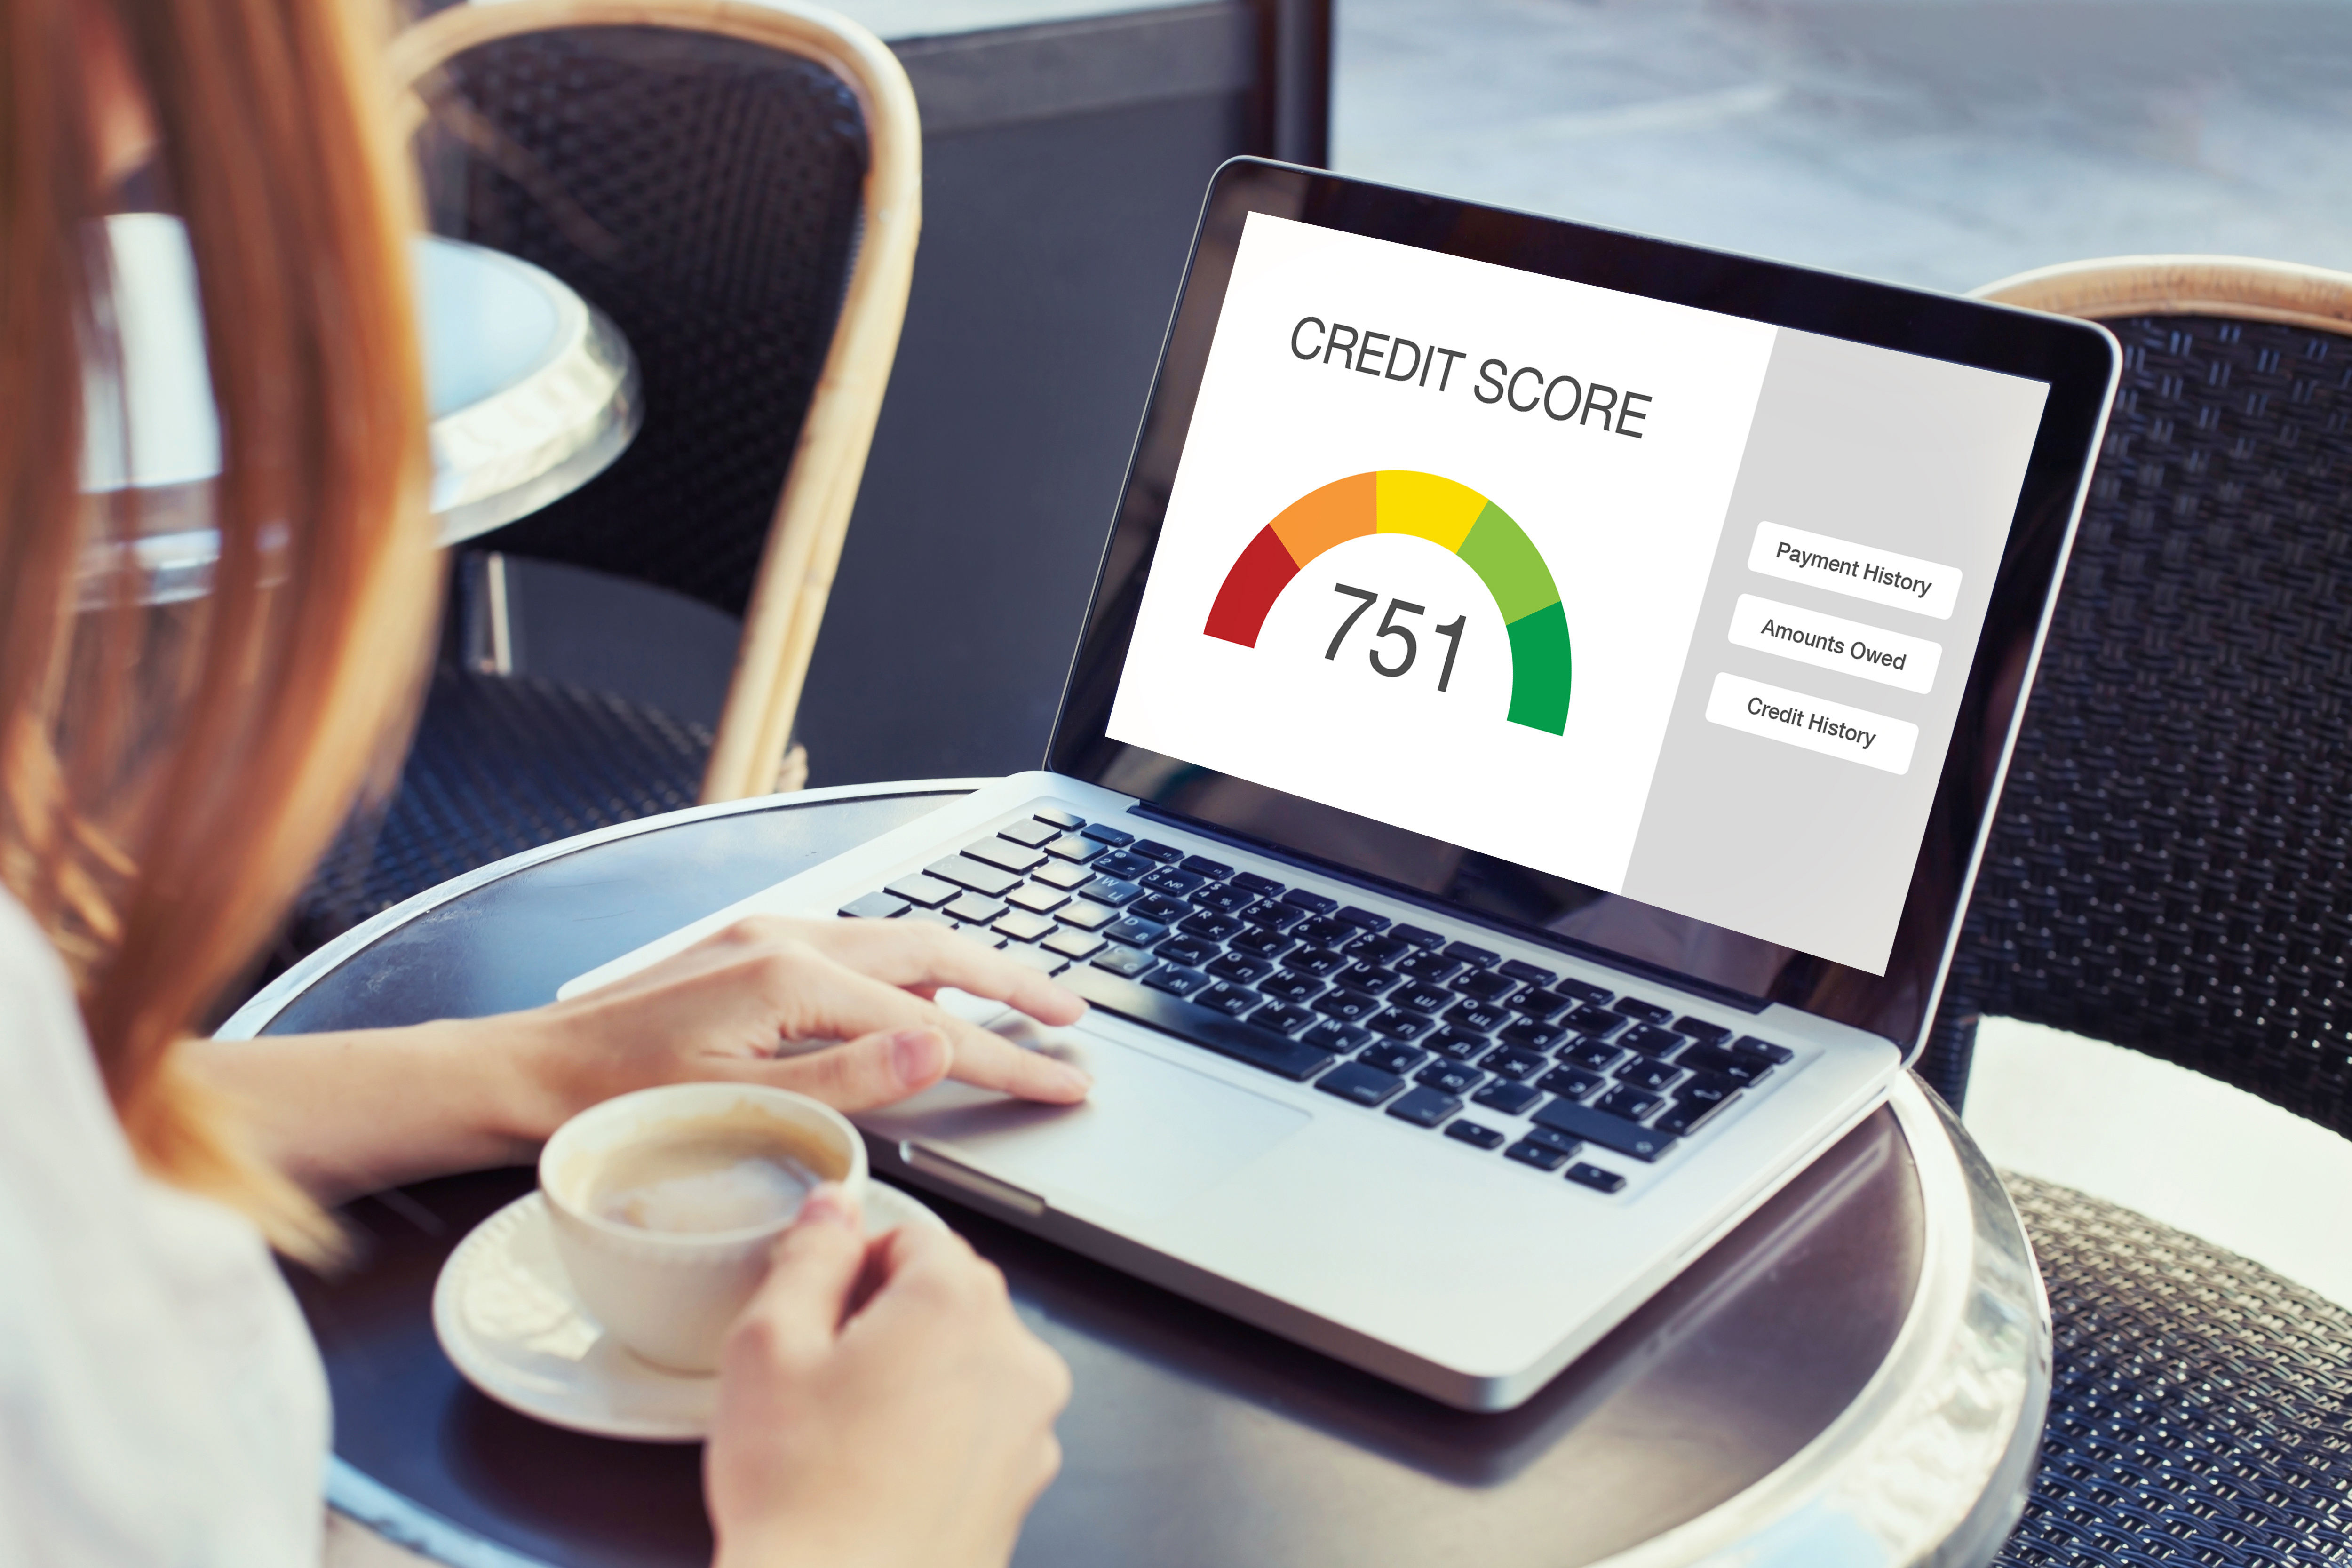 Afinal, qual score ideal para ser aprovado no cartão de crédito? Fonte: Adobe Stock.